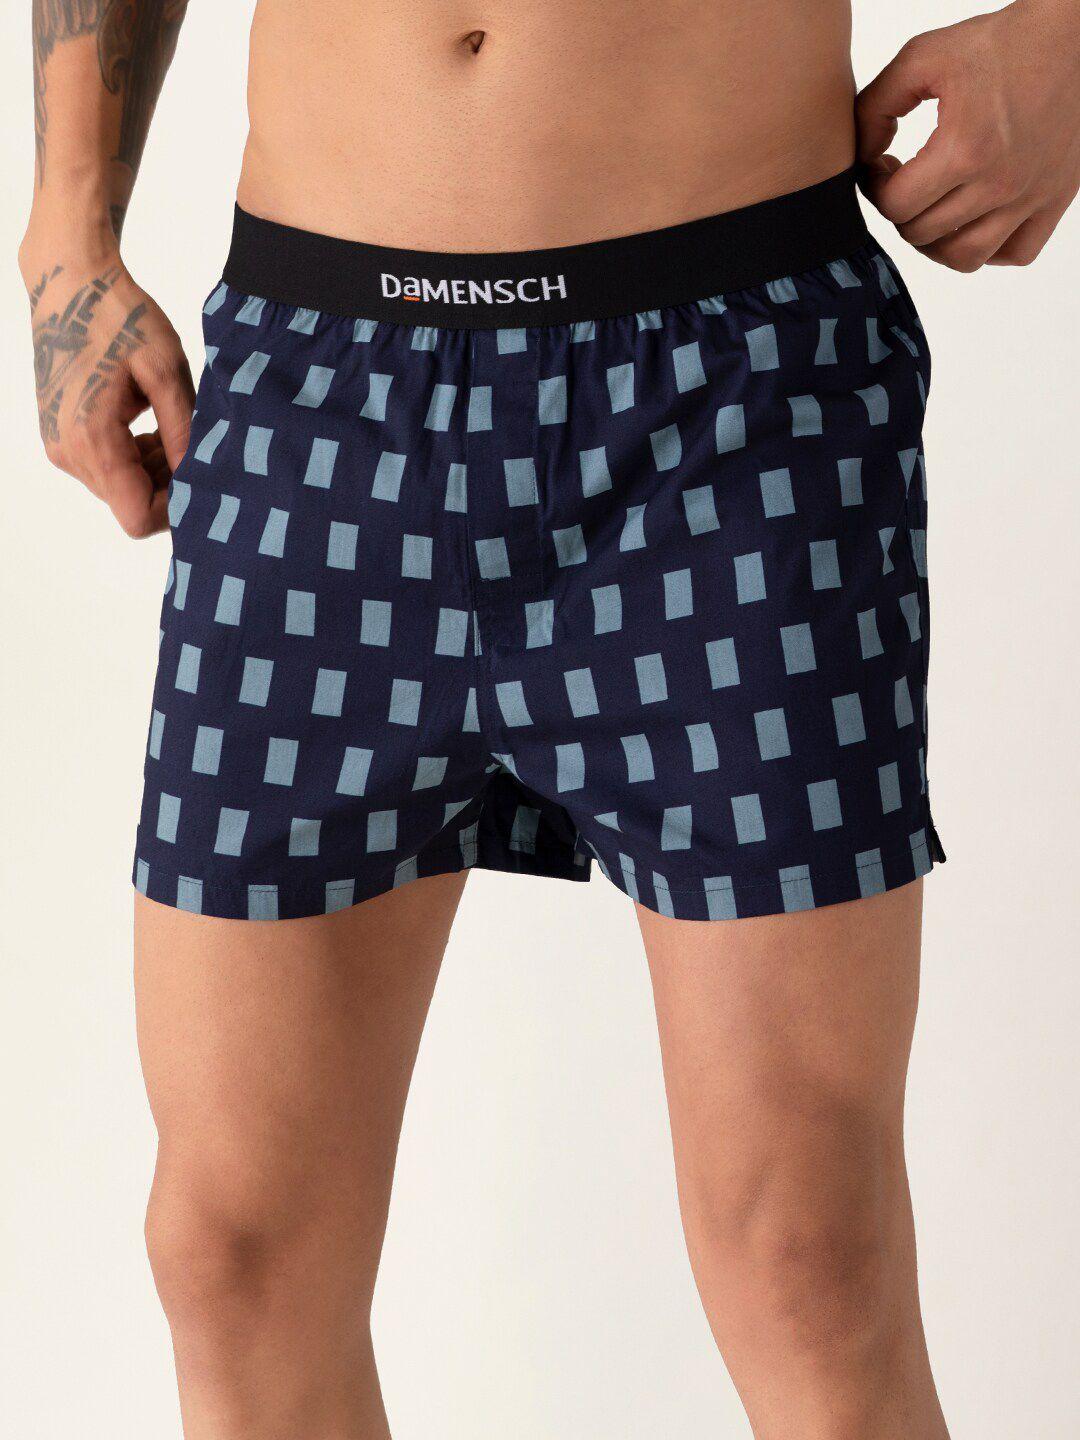 damensch men  checkered navy blue ultra-light cotton regular fit inner boxer